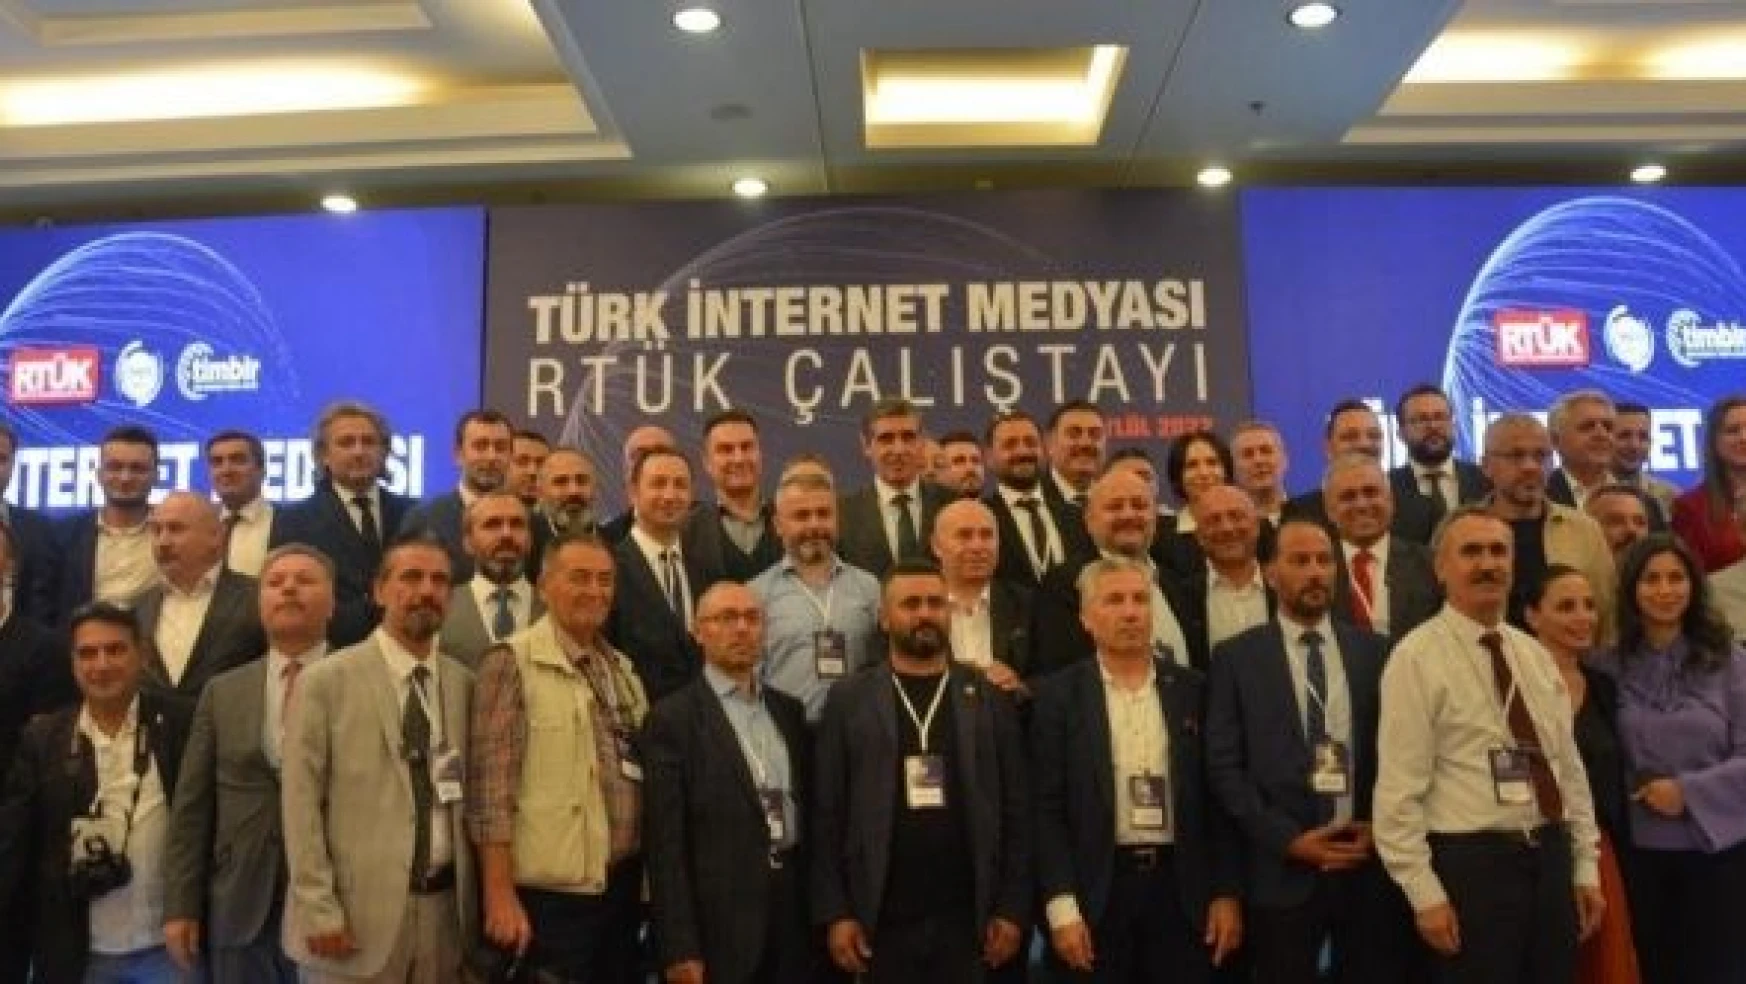 RTÜK Başkan Vekili Orhan Karadaş: "İnternet haberciliği hakikat eksenli olmalı"